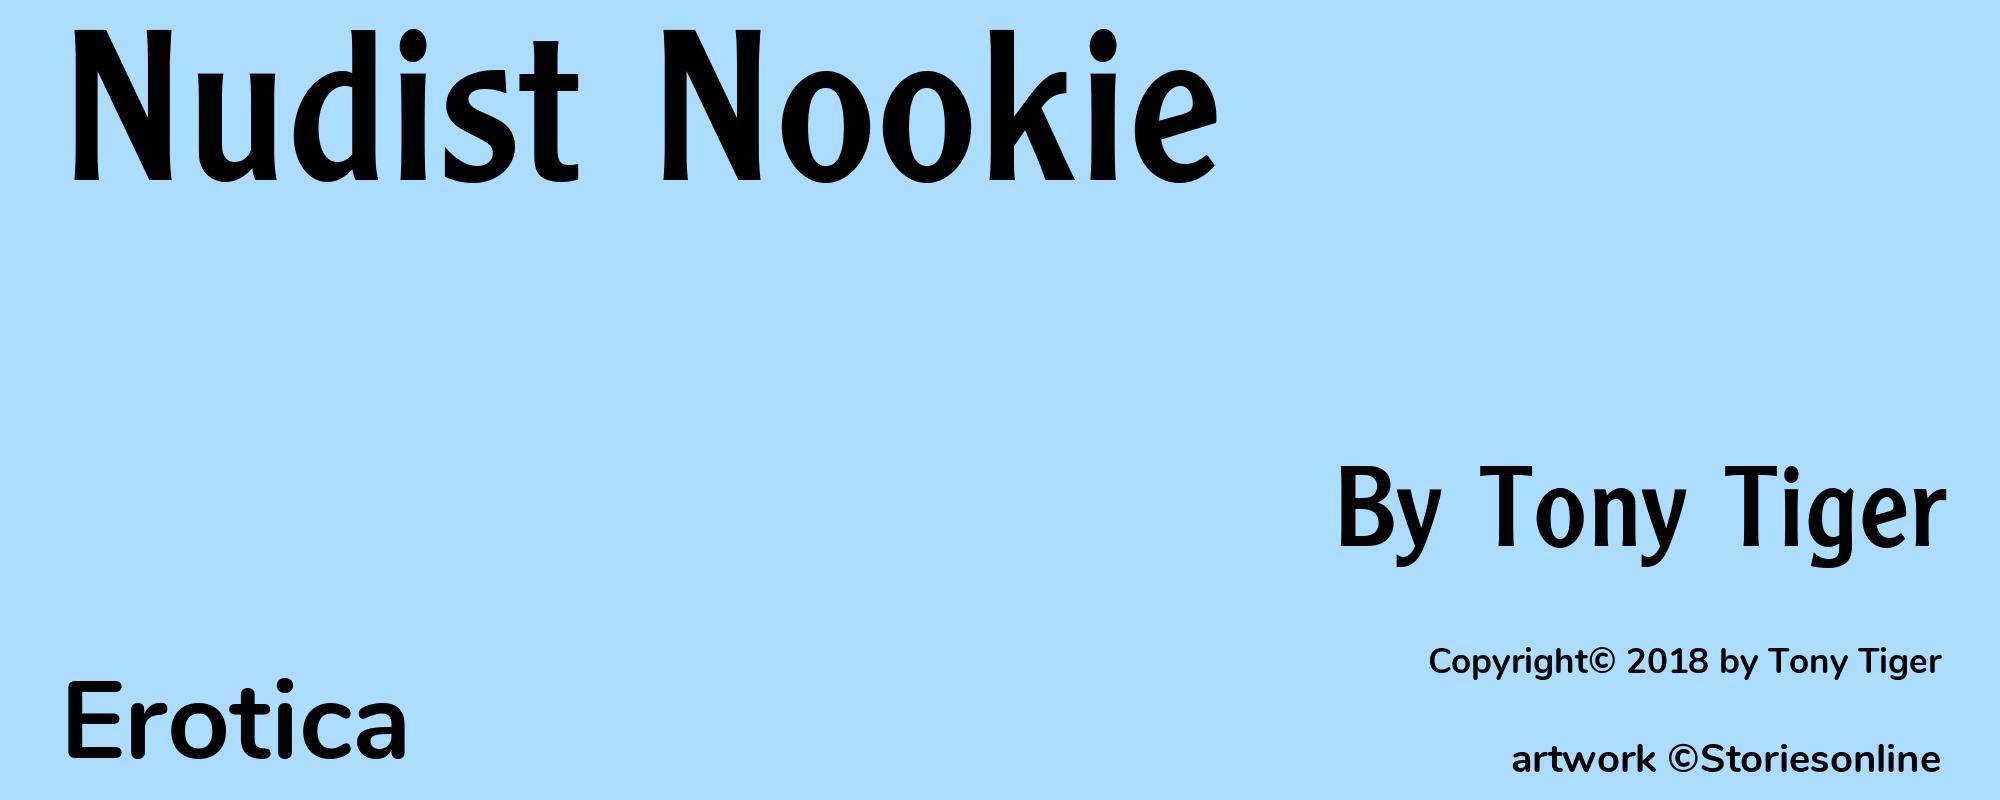 Nudist Nookie - Cover